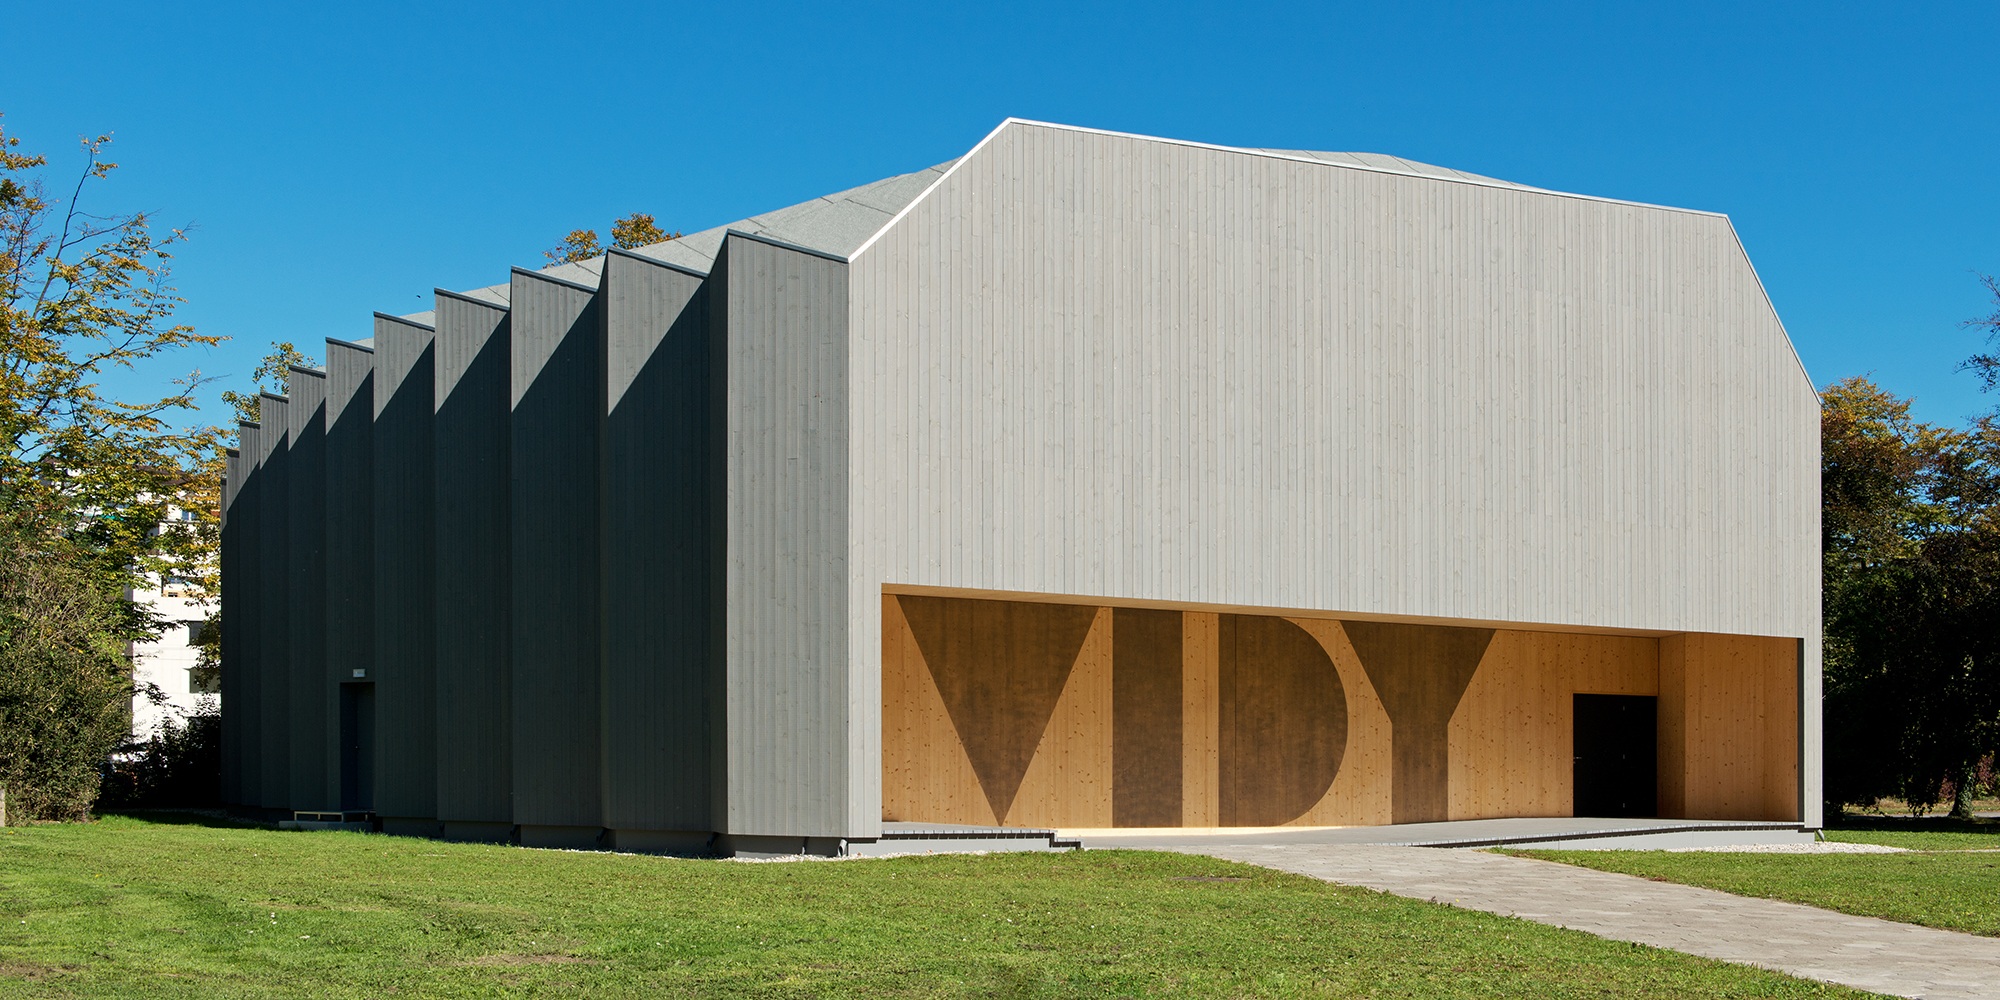 Der spezielle Bau des Théâtre de Vidy in Lausanne erinnert an ein Origami Faltwerk aus Holz